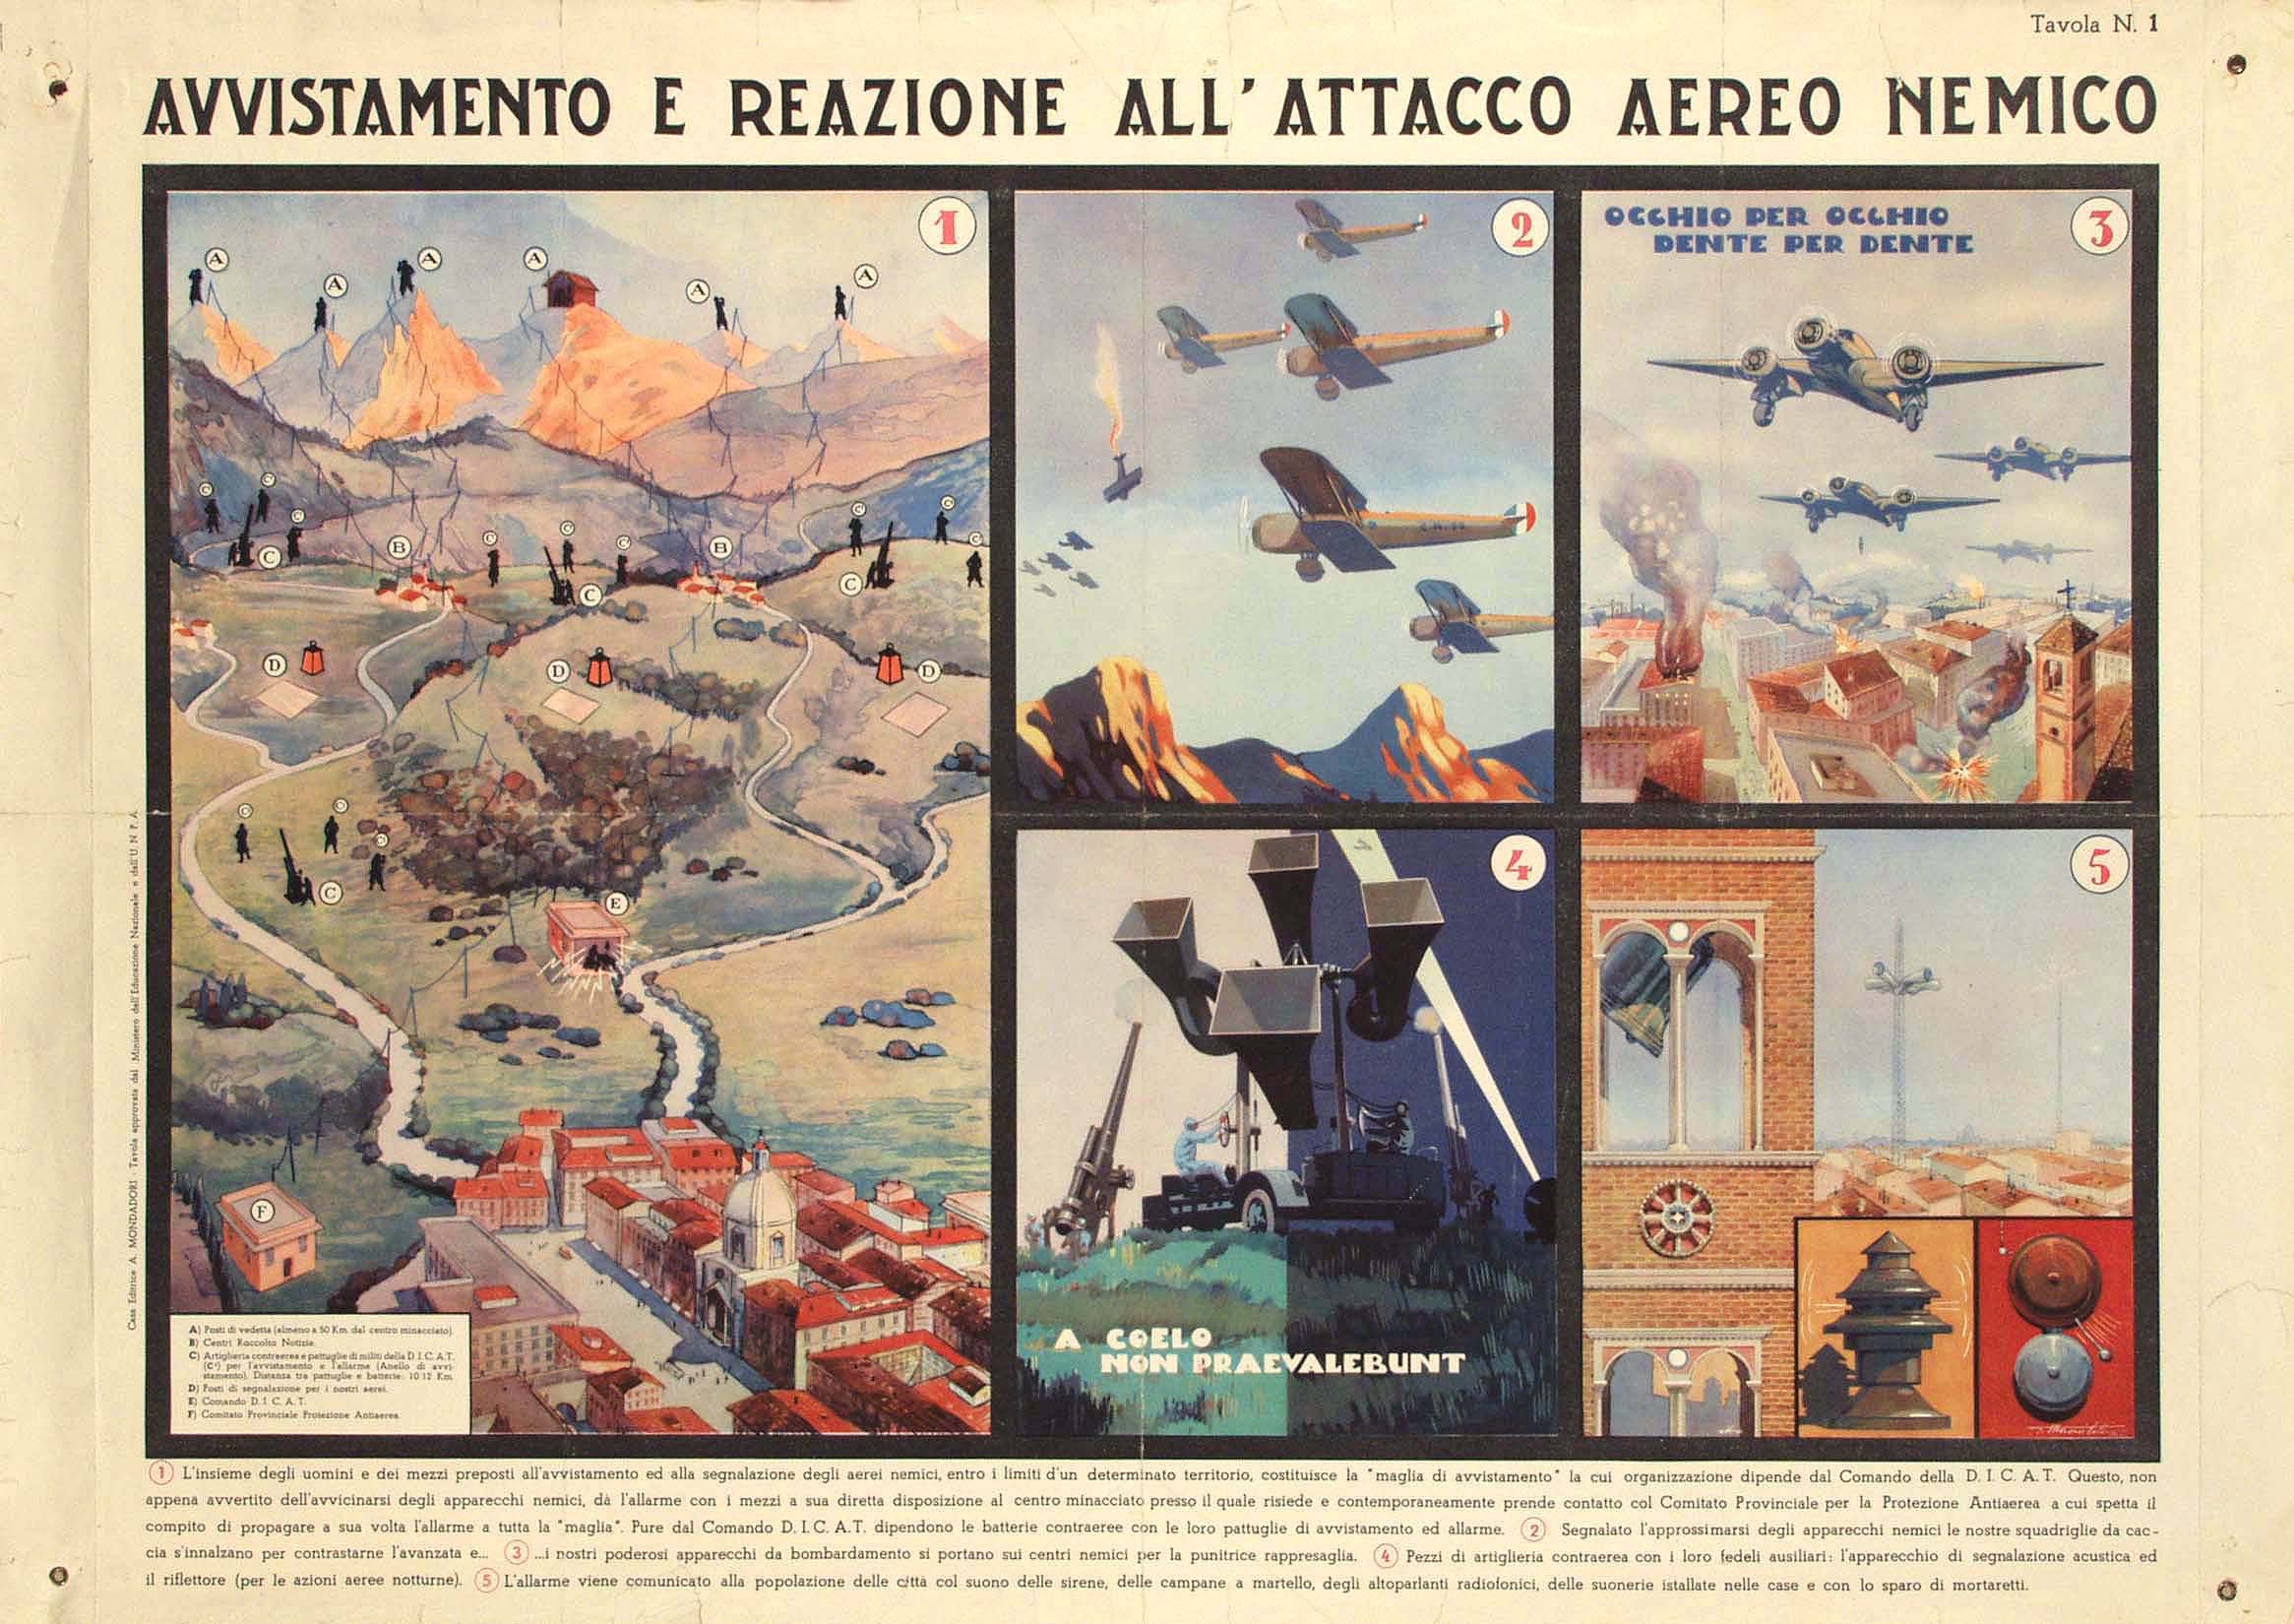 Manifesto a stampa con titolo "Avvistamento e reazione all'attacco aereo nemico" e pannelli raffiguranti panoramica, aerei in volo, sistema di allarme